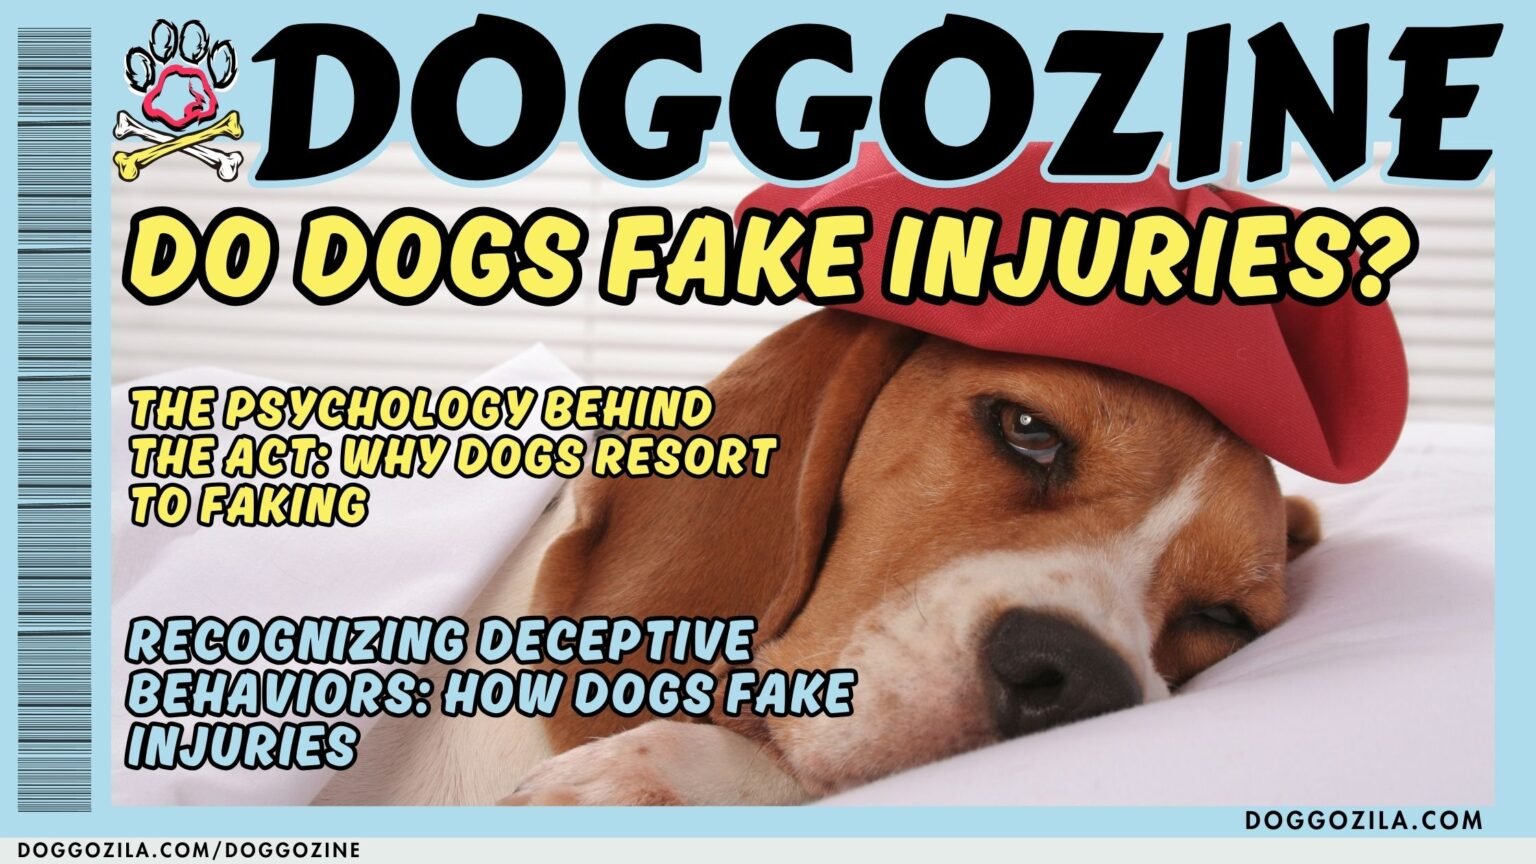 DO DOGS FAKE INJURIES